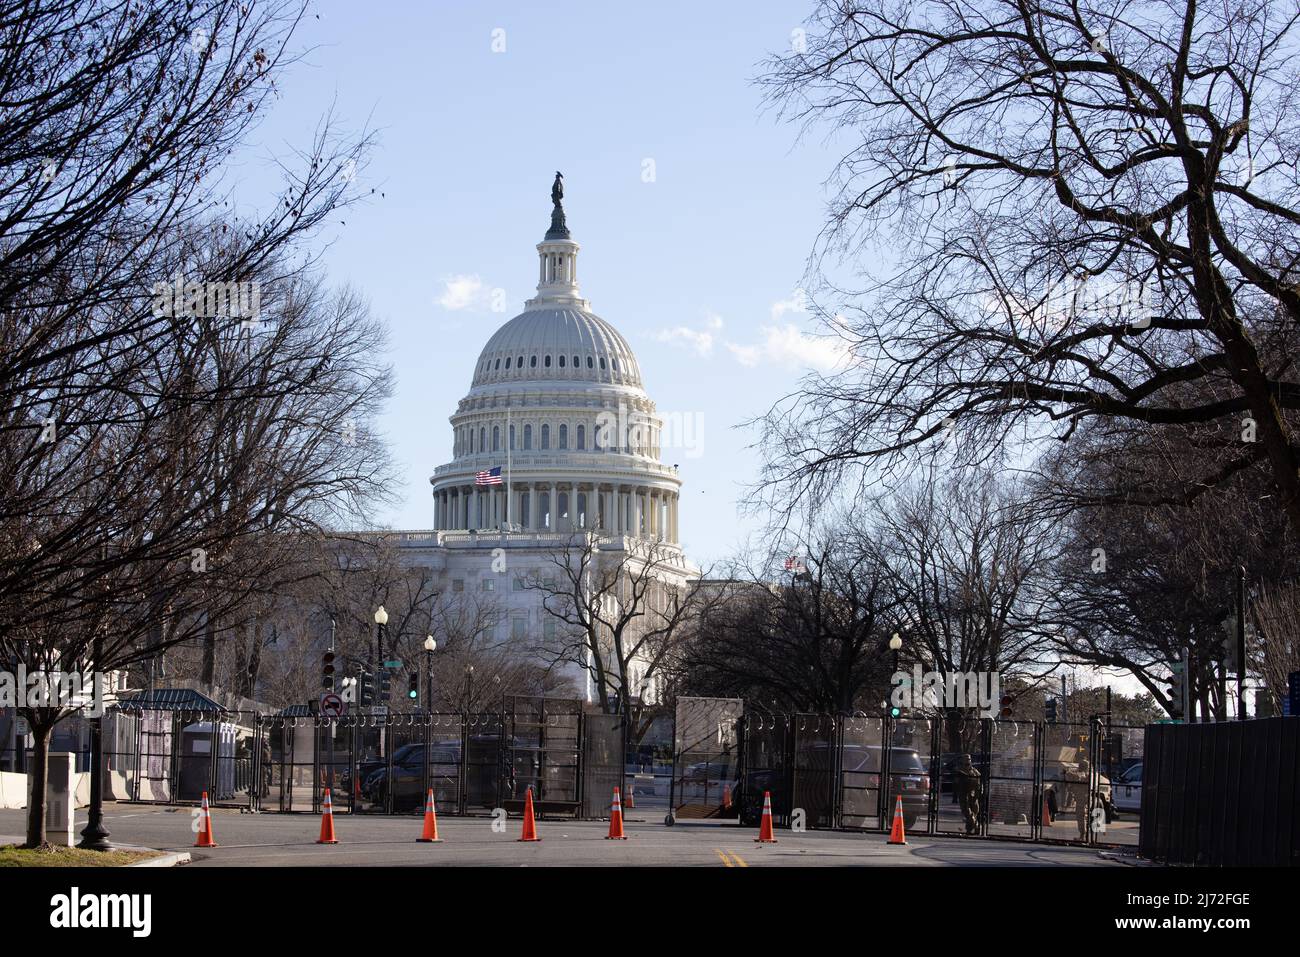 WASHINGTON, D.C. – 19. Januar 2021: Das Kapitol der Vereinigten Staaten wird am Vorabend der Amtseinführung des Präsidenten von 2021 gesehen. Stockfoto